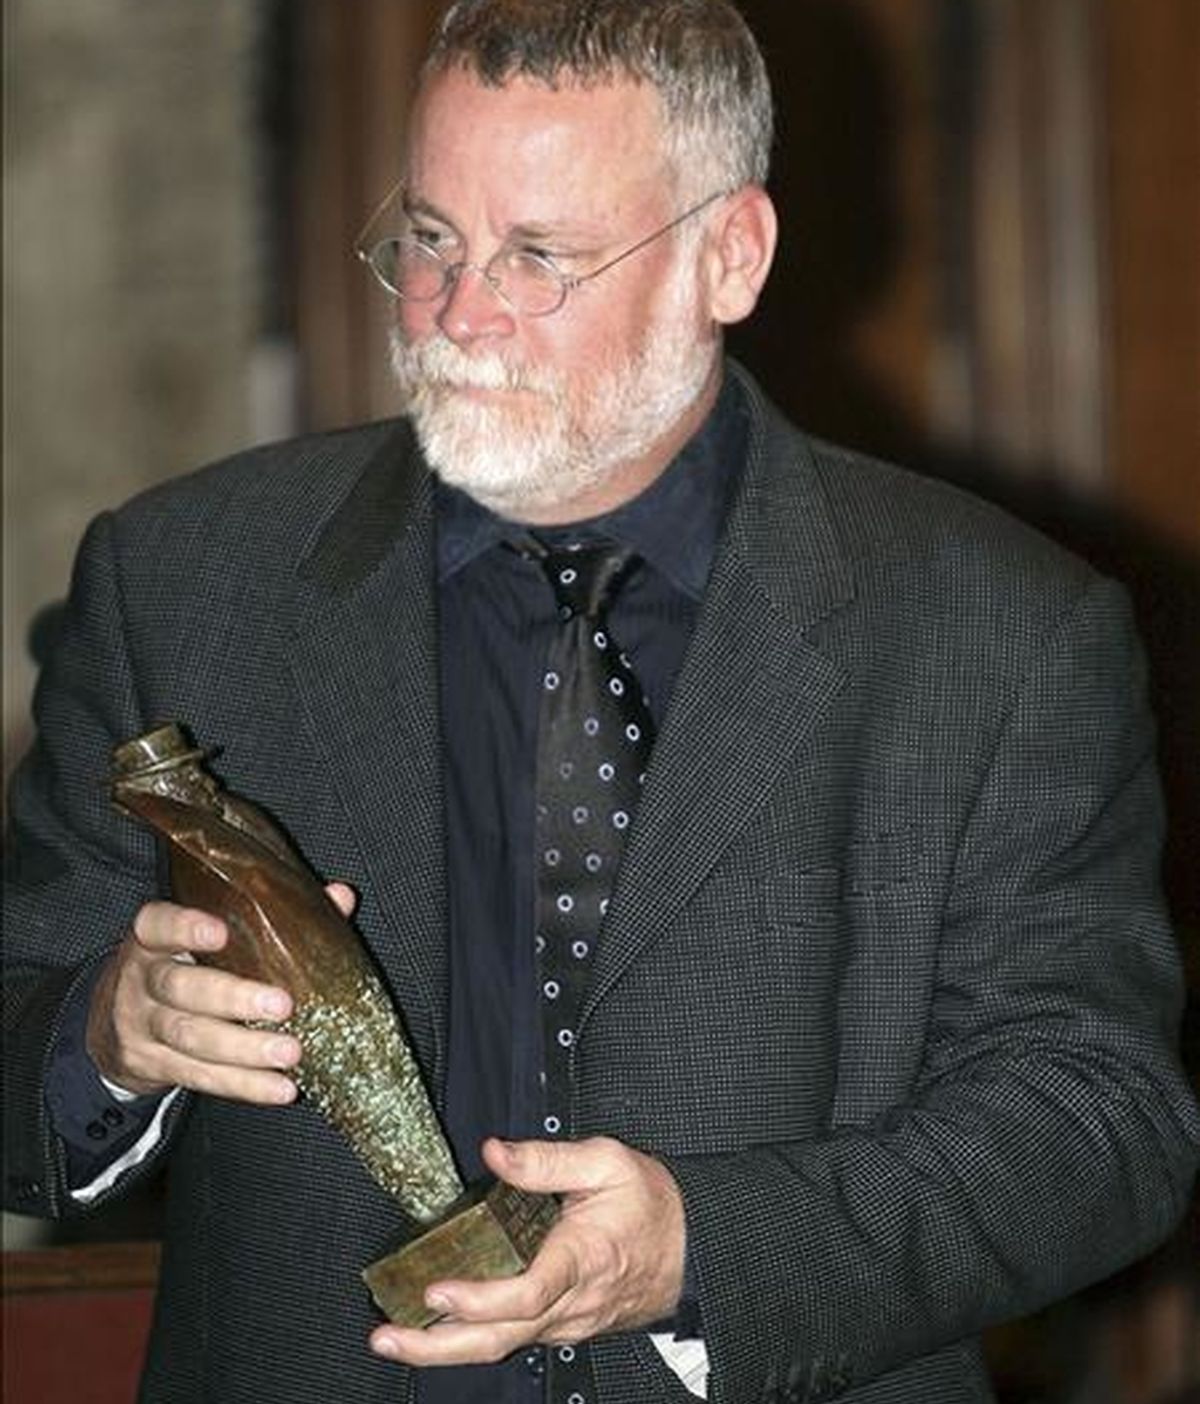 El escritor estadounidense Michael Connelly, considerado uno de los grandes de la novela policíaca actual, recibe el premio Pepe Carvalho 2009 hoy en Barcelona. EFE